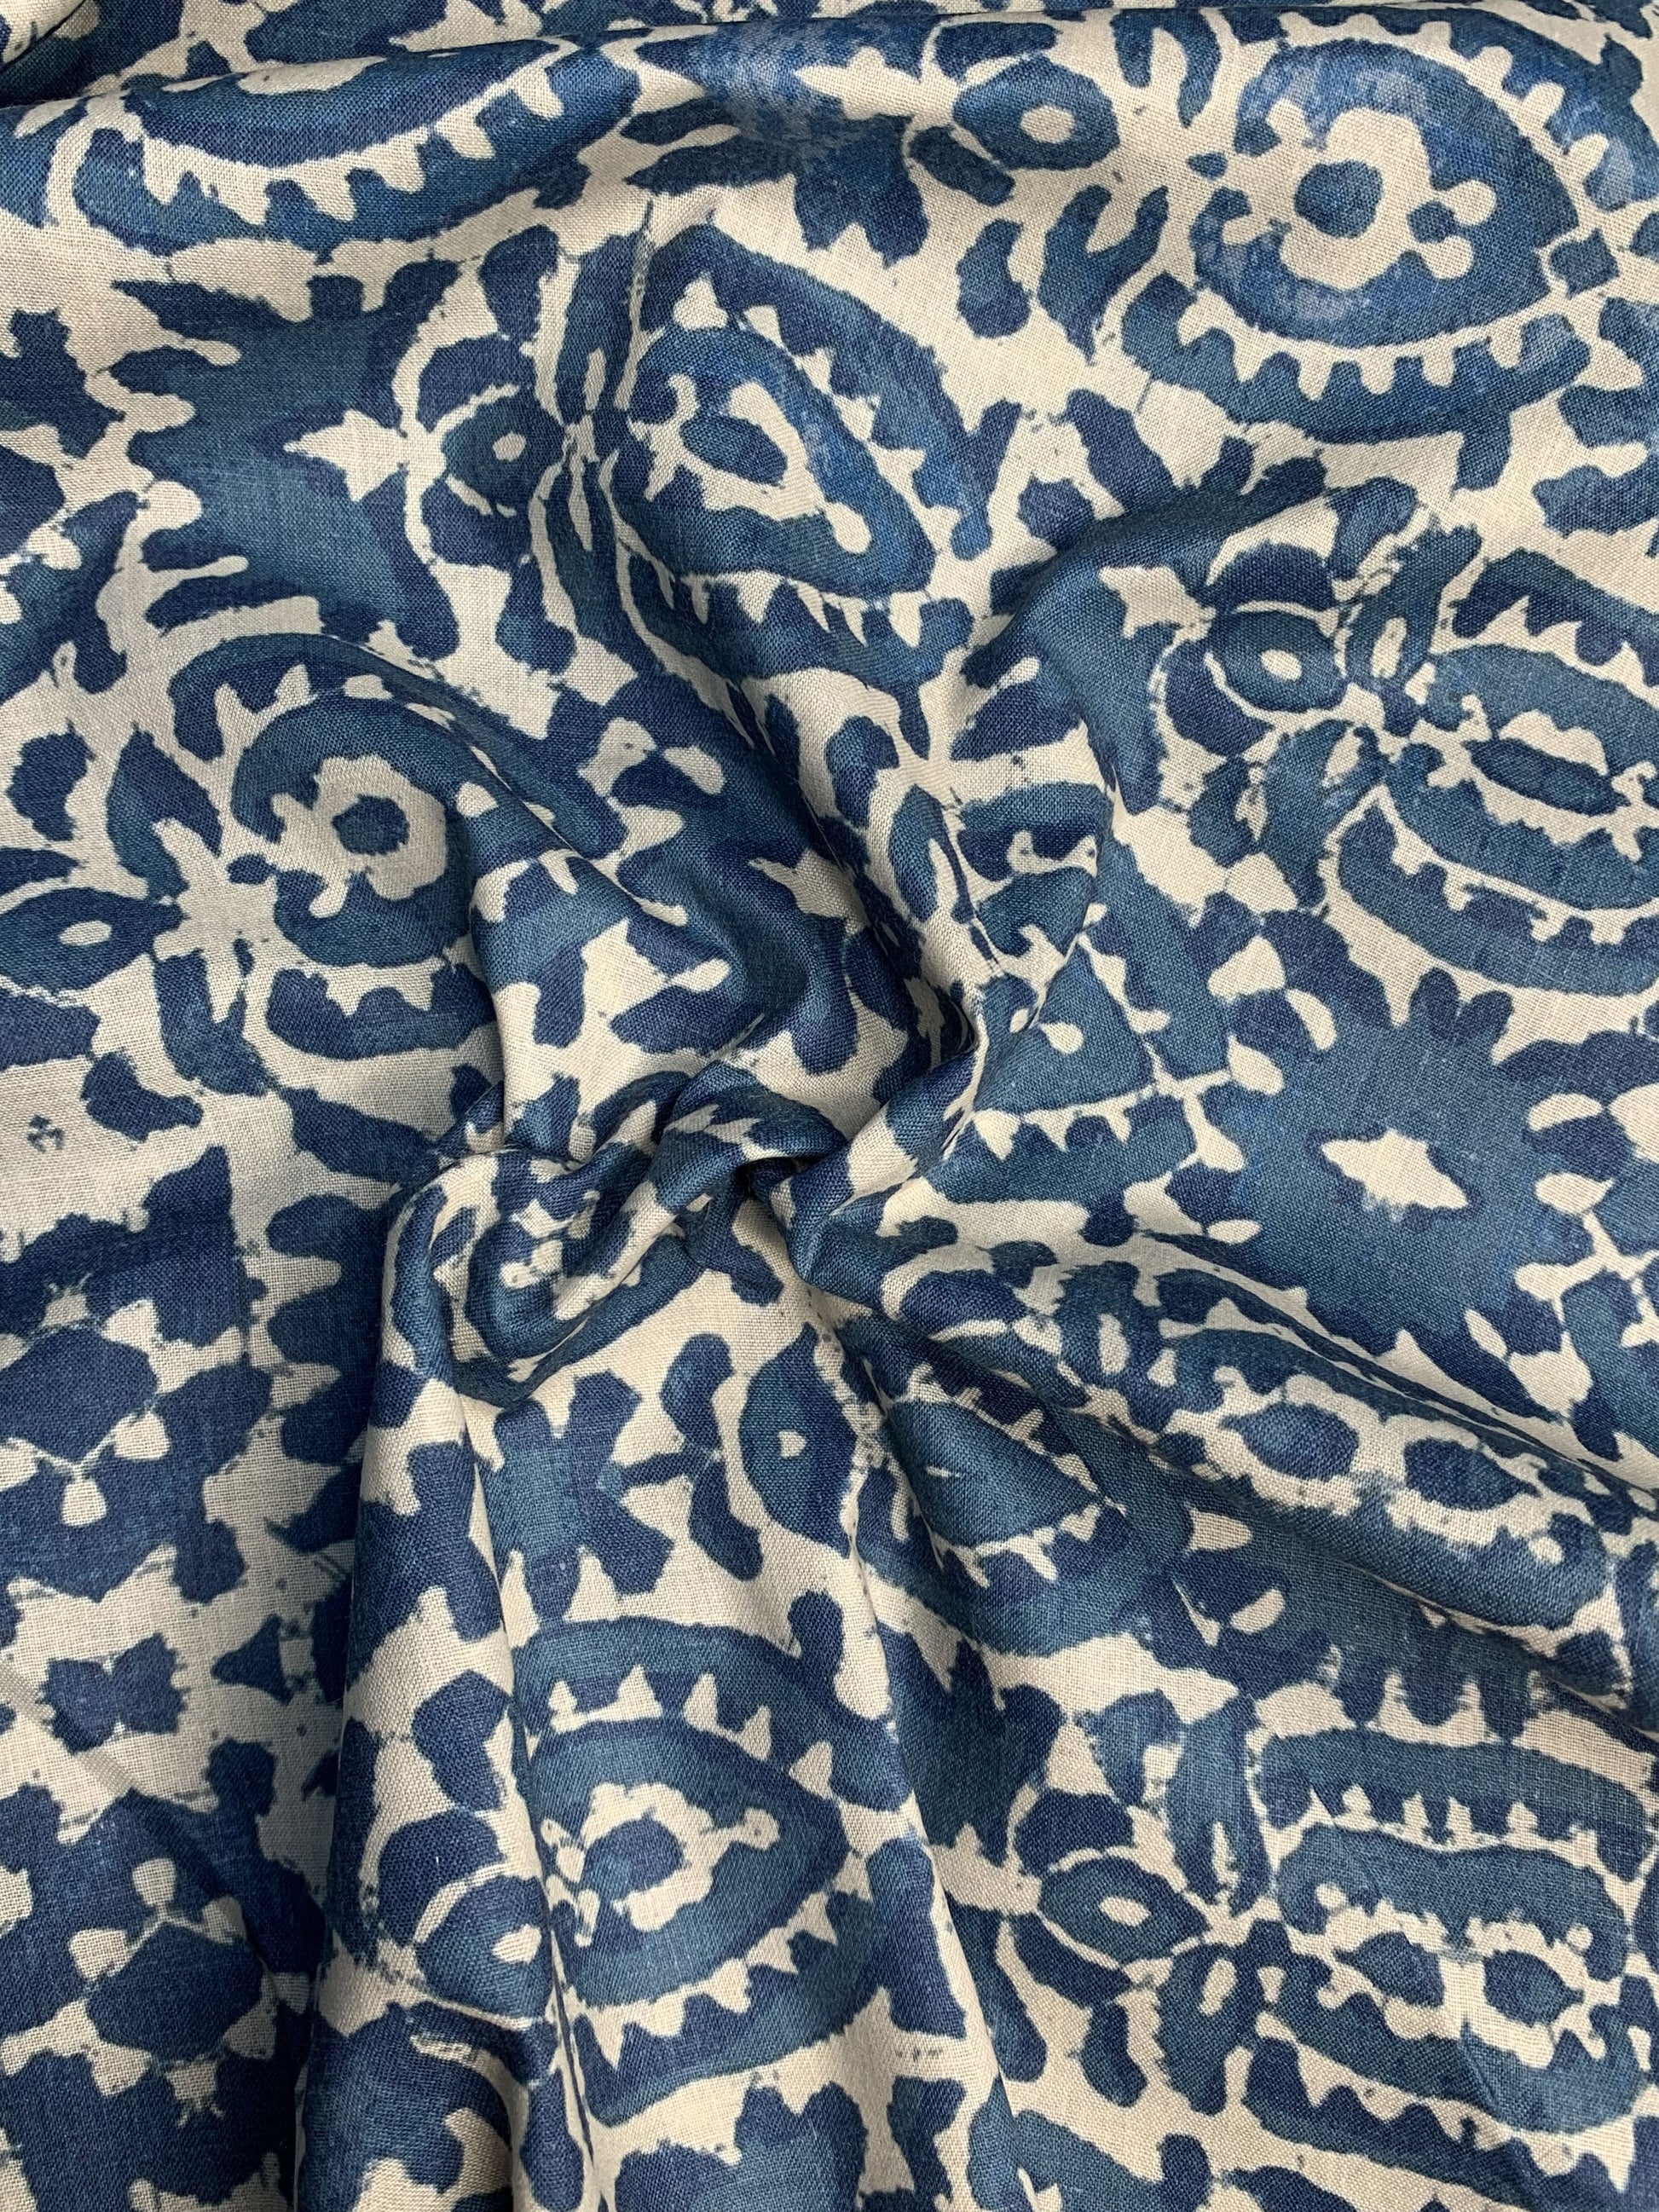 Premium Cobalt Blue Handblock Print Cotton Fabric